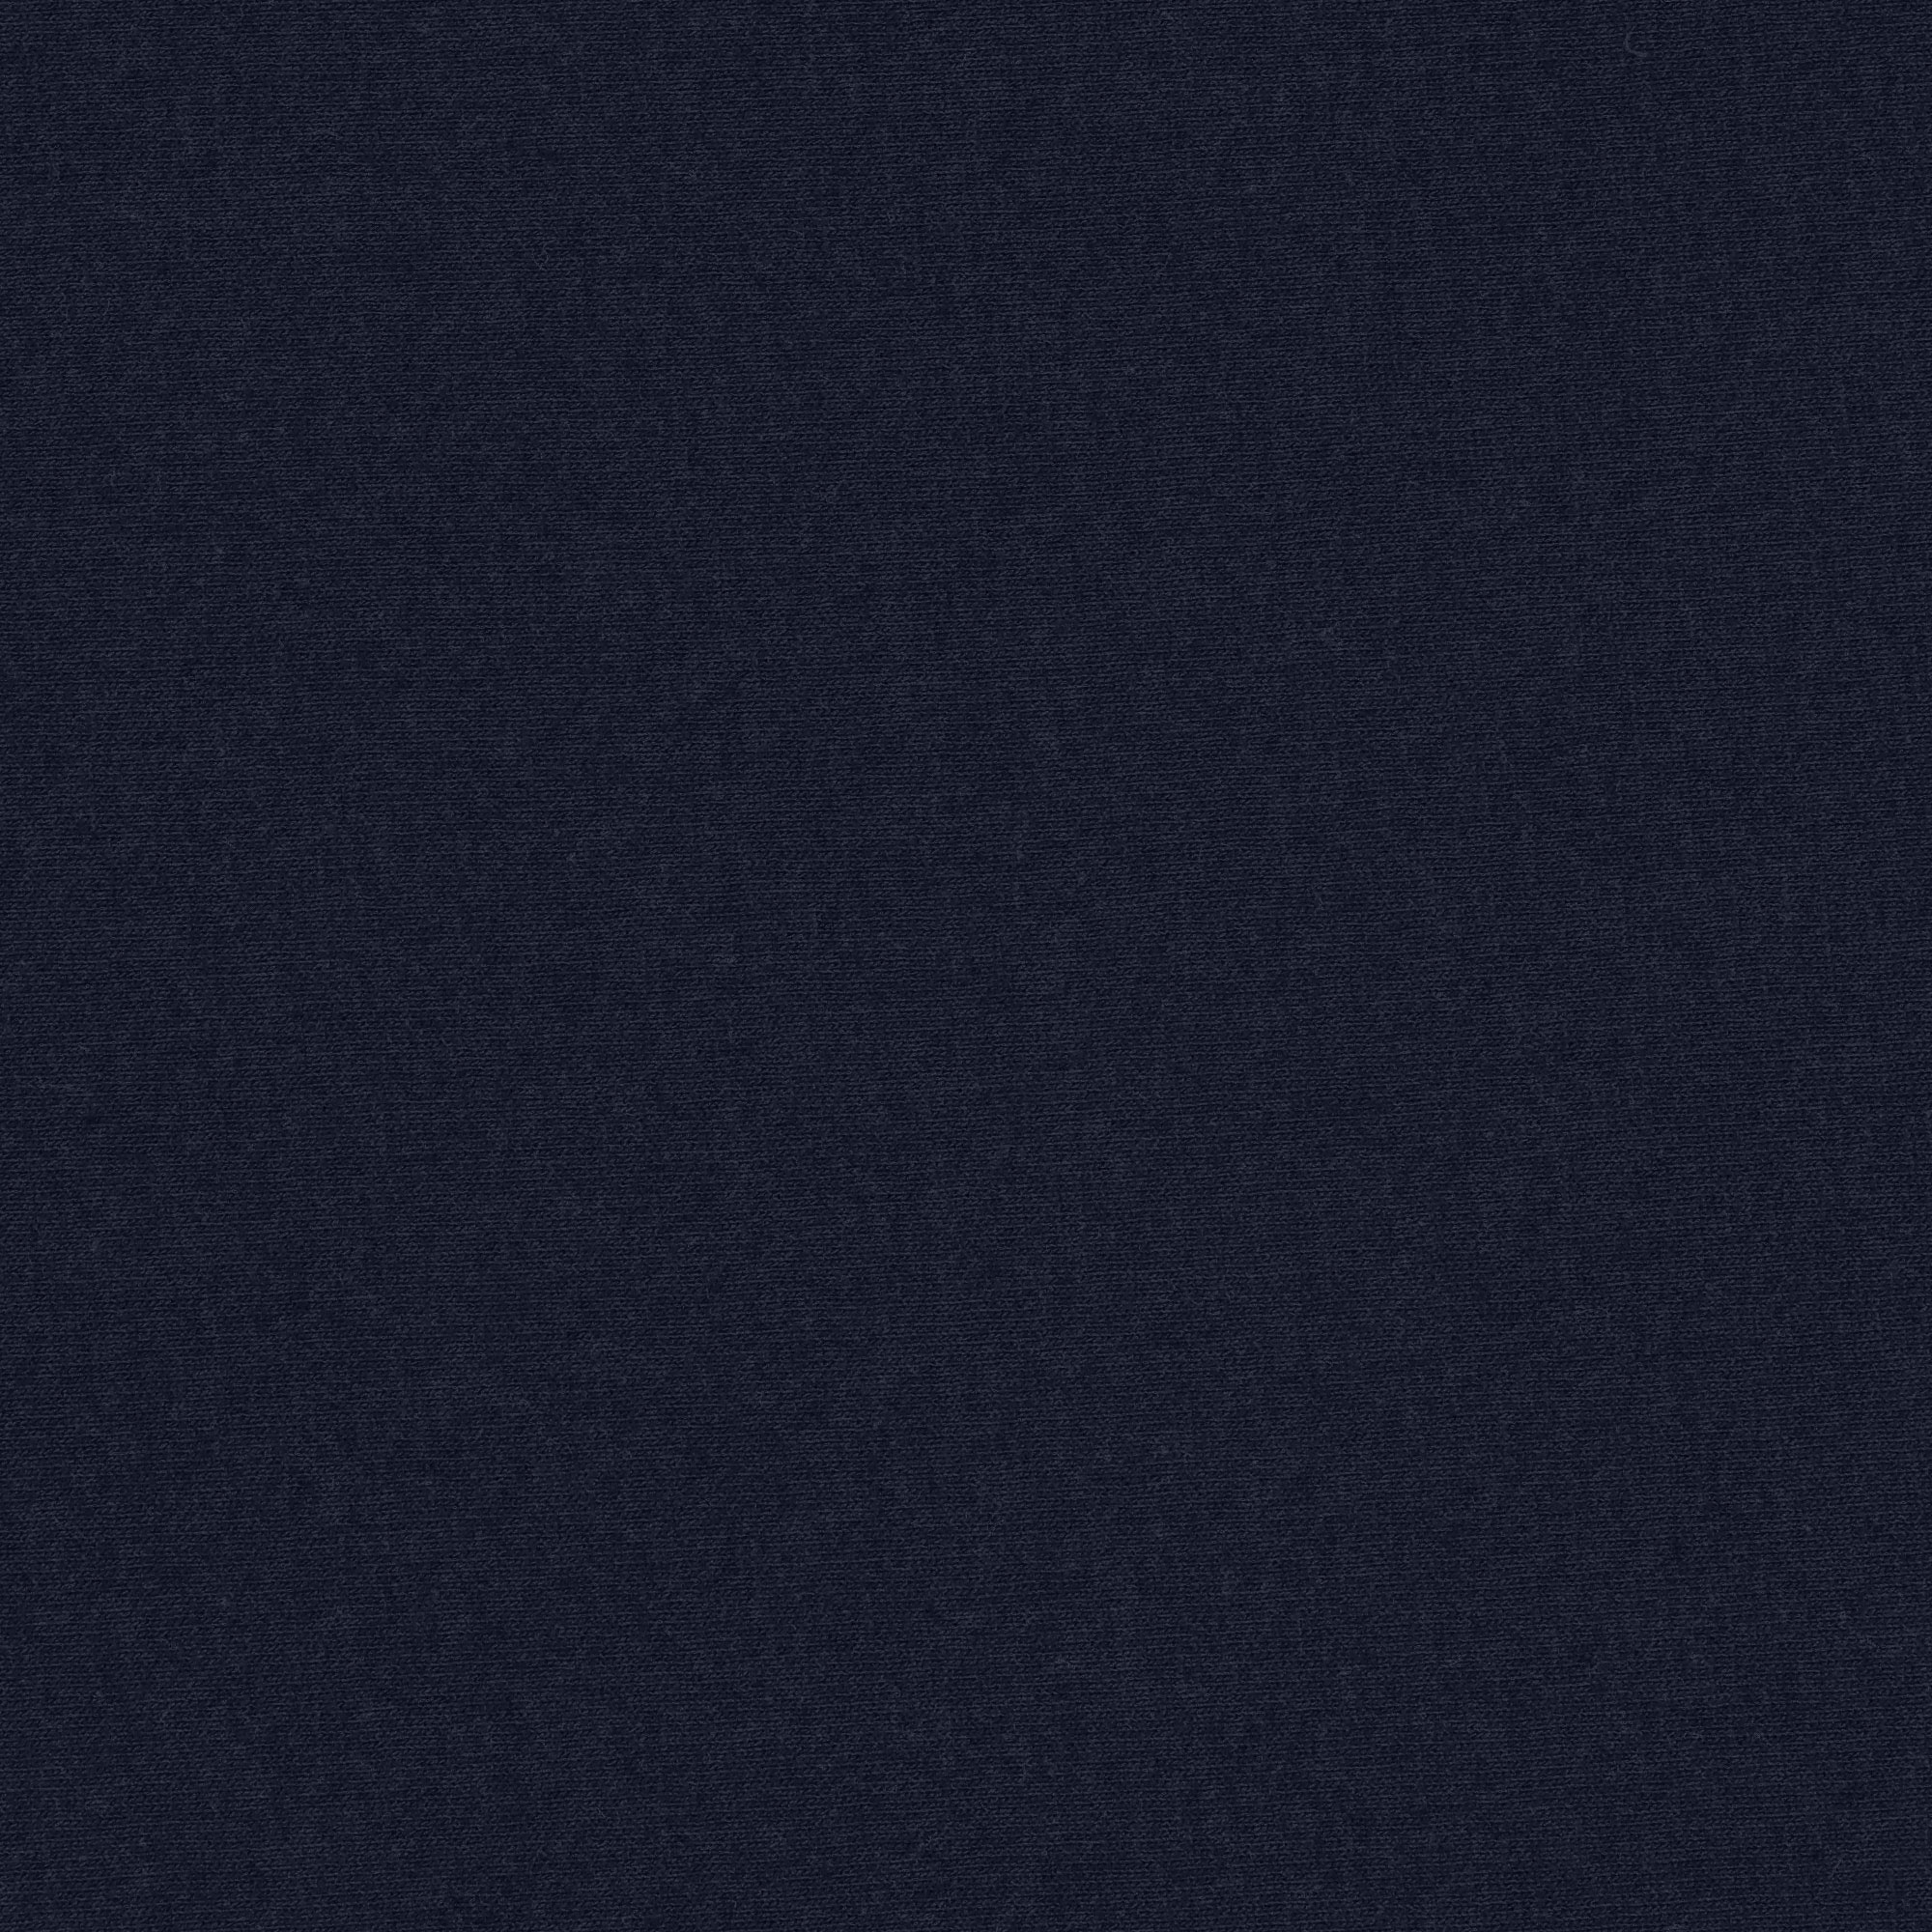 Футболка женская AMADEY classic темно-синяя   42-44 S, цвет темно-синий, размер S - фото 3